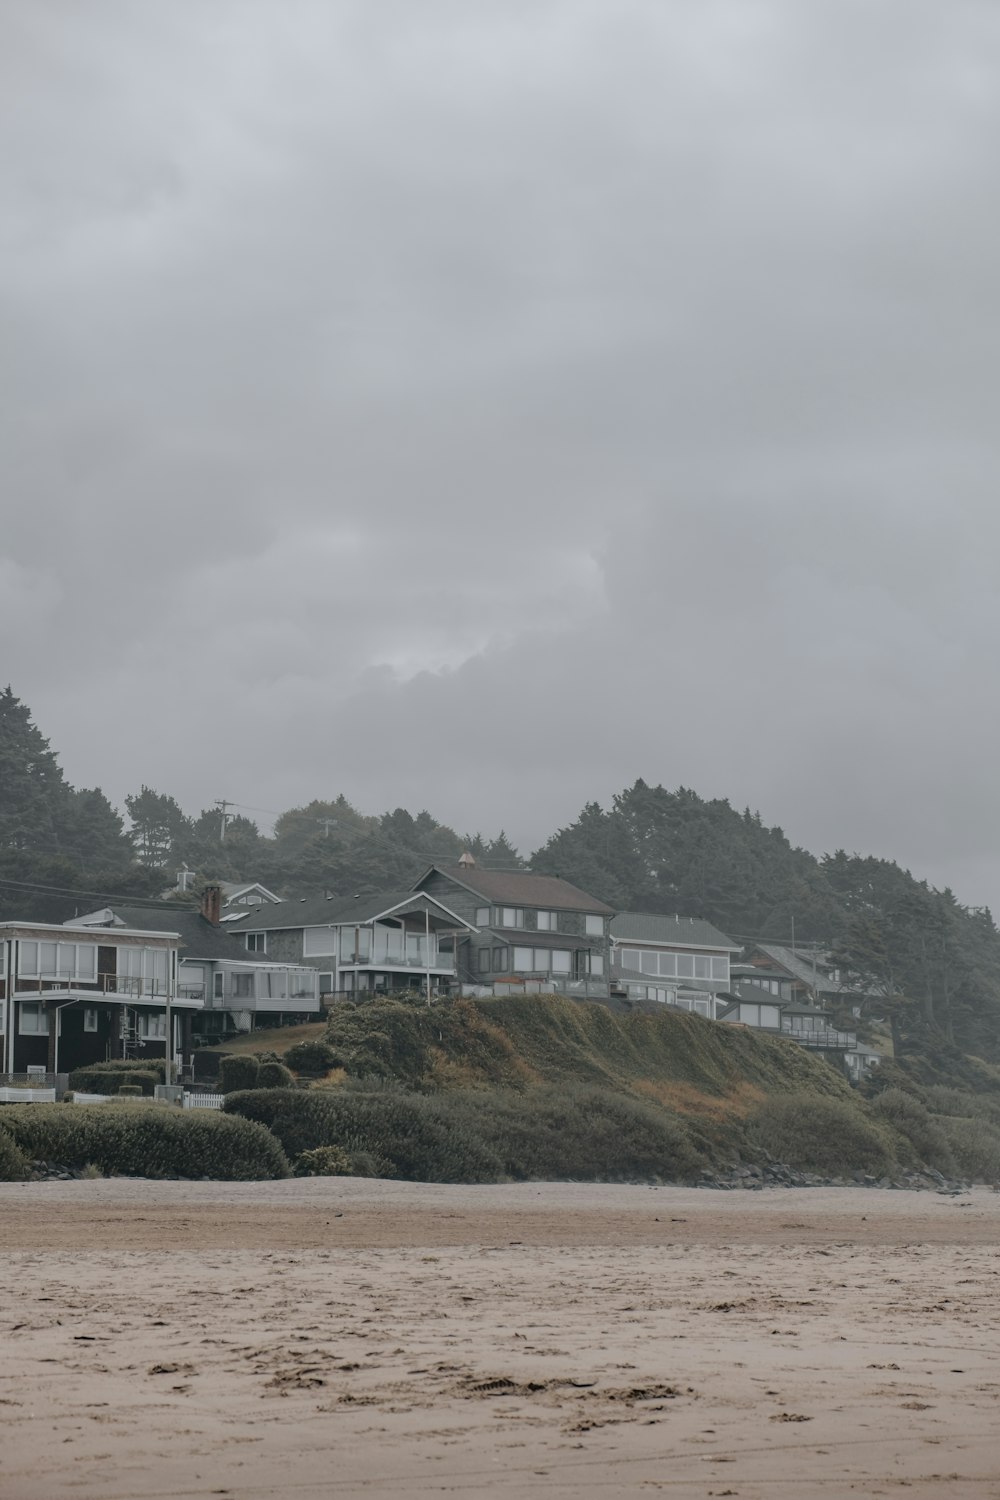 a group of houses on a beach